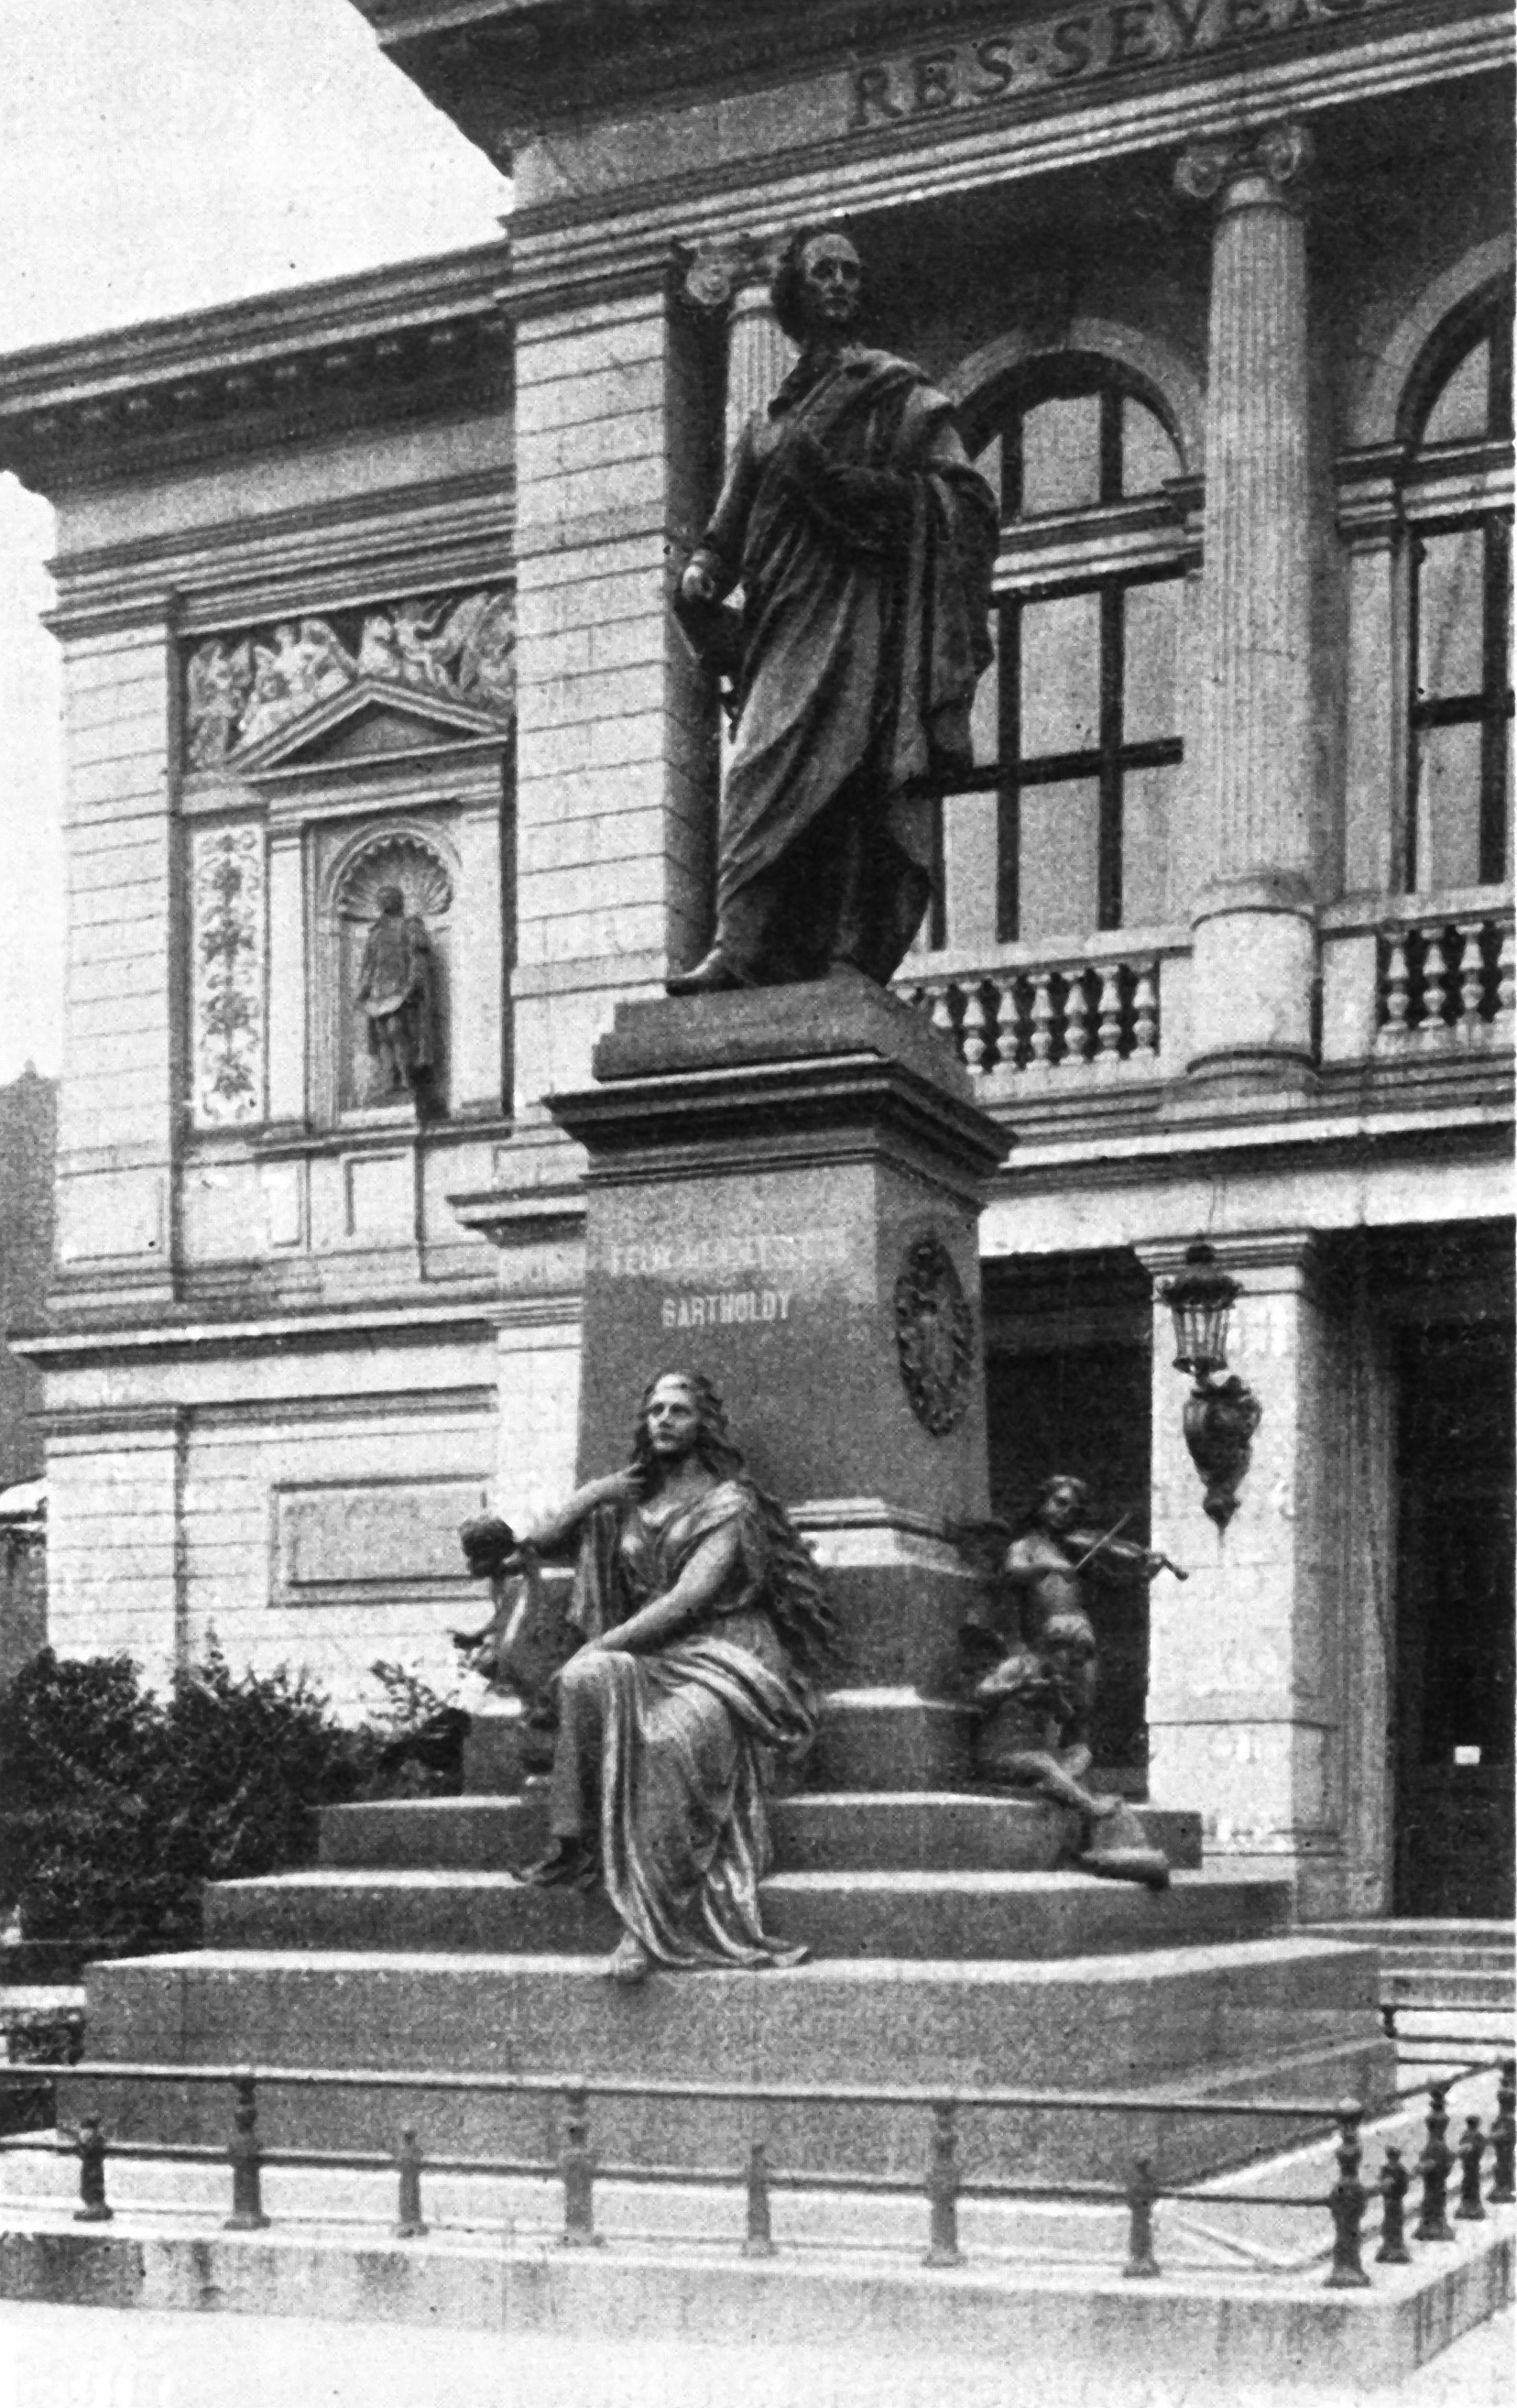 чёрно-белая фотография статуи облачённой мужской фигуры на ступенчатом постаменте, с выграавированнной надписью «Феликс Мендельсон Бартольди», с сидящей женской фигурой, держащей лиру на его основании, напротив арочной здания